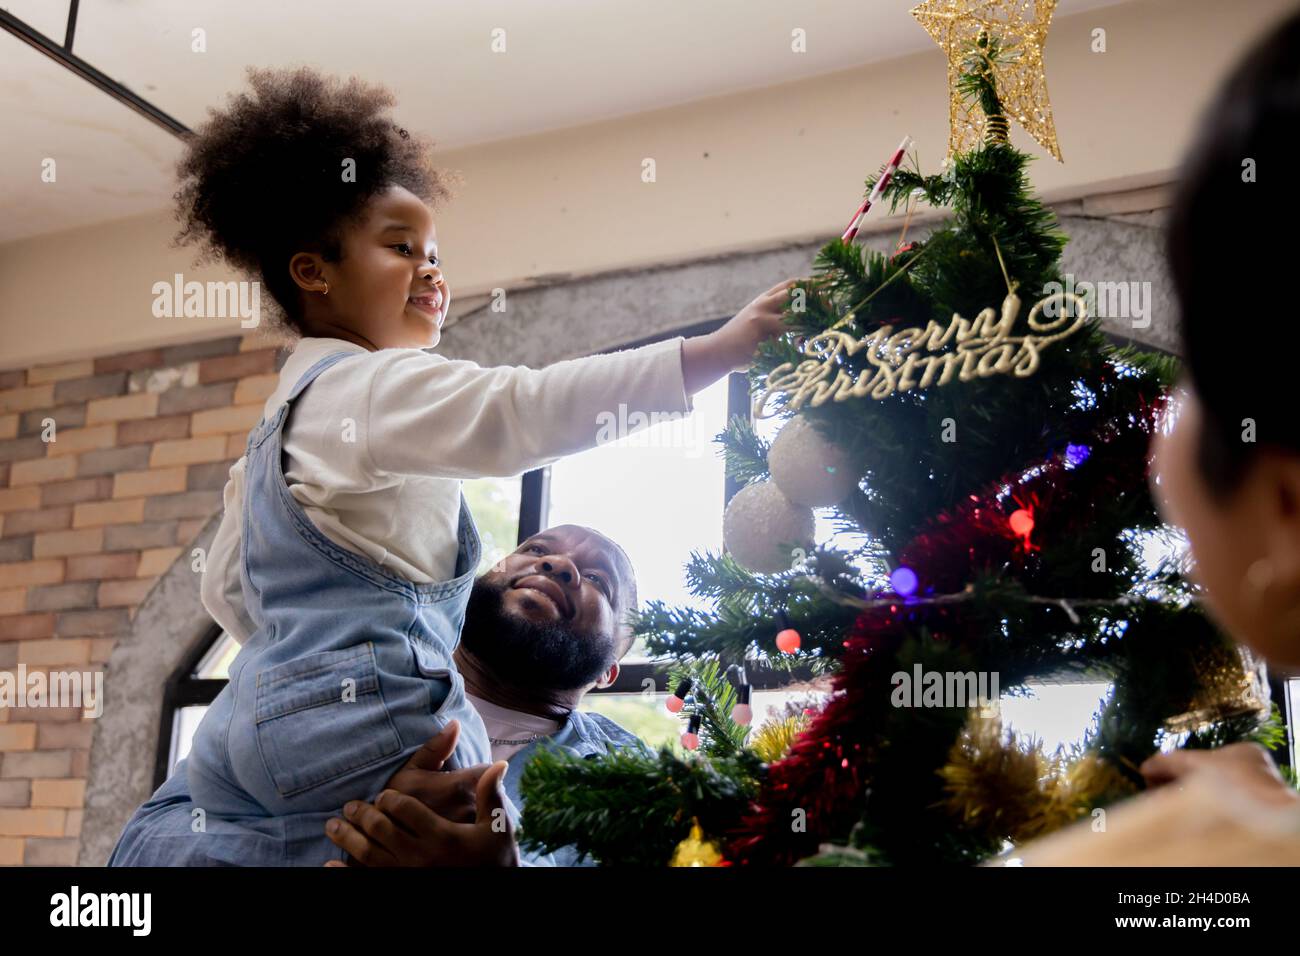 Schönes junges afroamerikanisches Mädchen, das vom hübschen Vater gepflückt wird, der während des Festivals den weihnachtsbaum verschönt, indem er Zuckerrohr an der Spitze des Baumes in der Nähe eines Sterns zu Hause hinzufügt Stockfoto